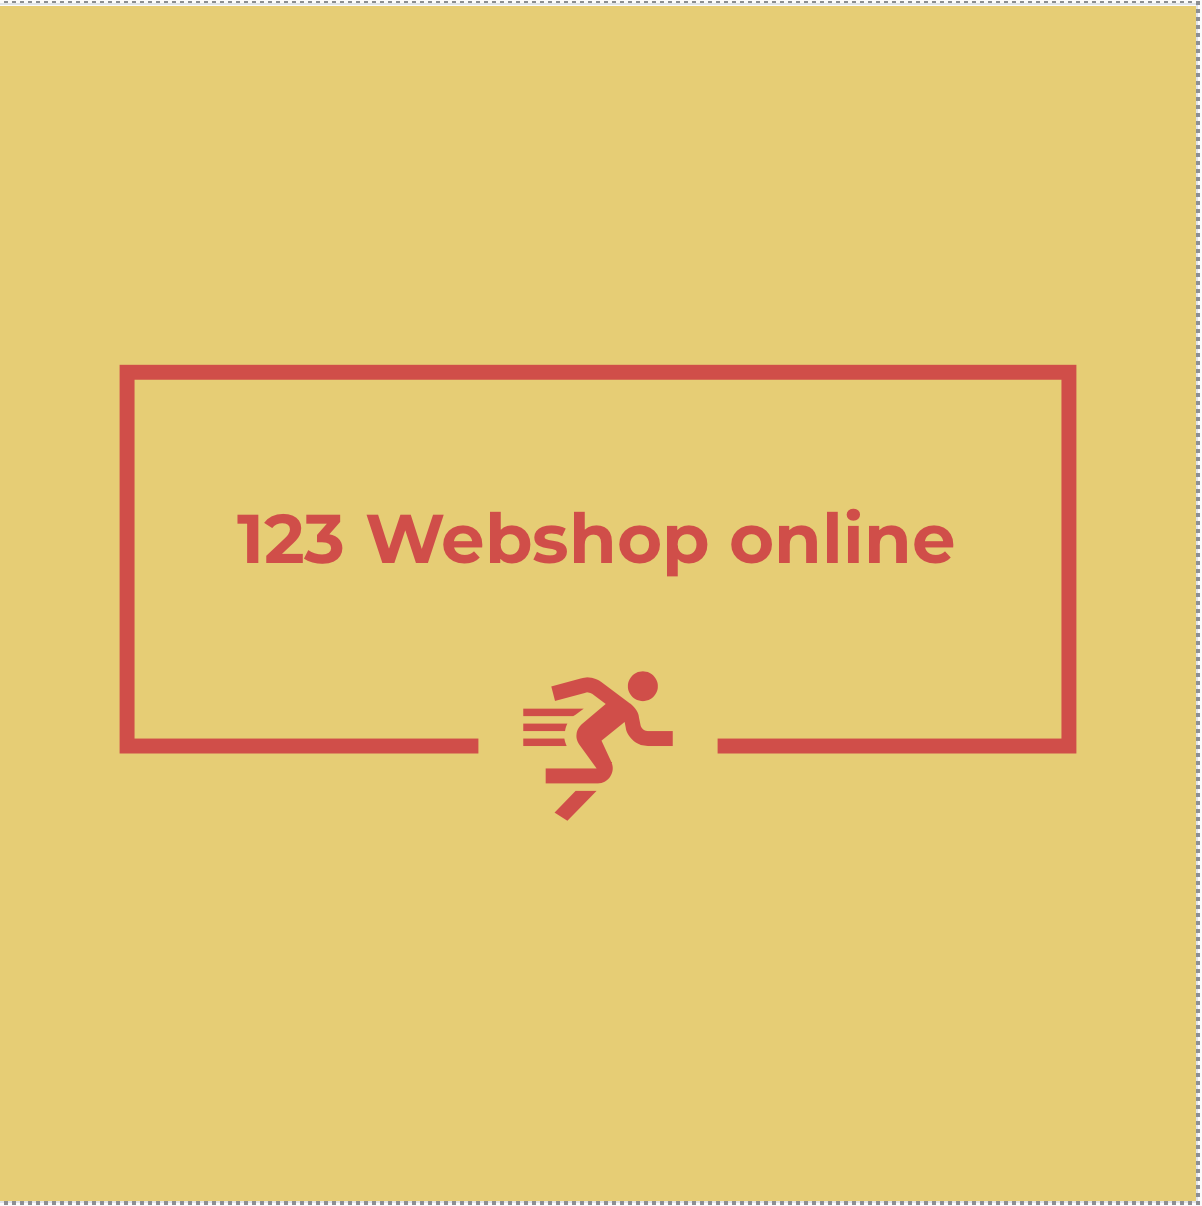 123 Webshop online